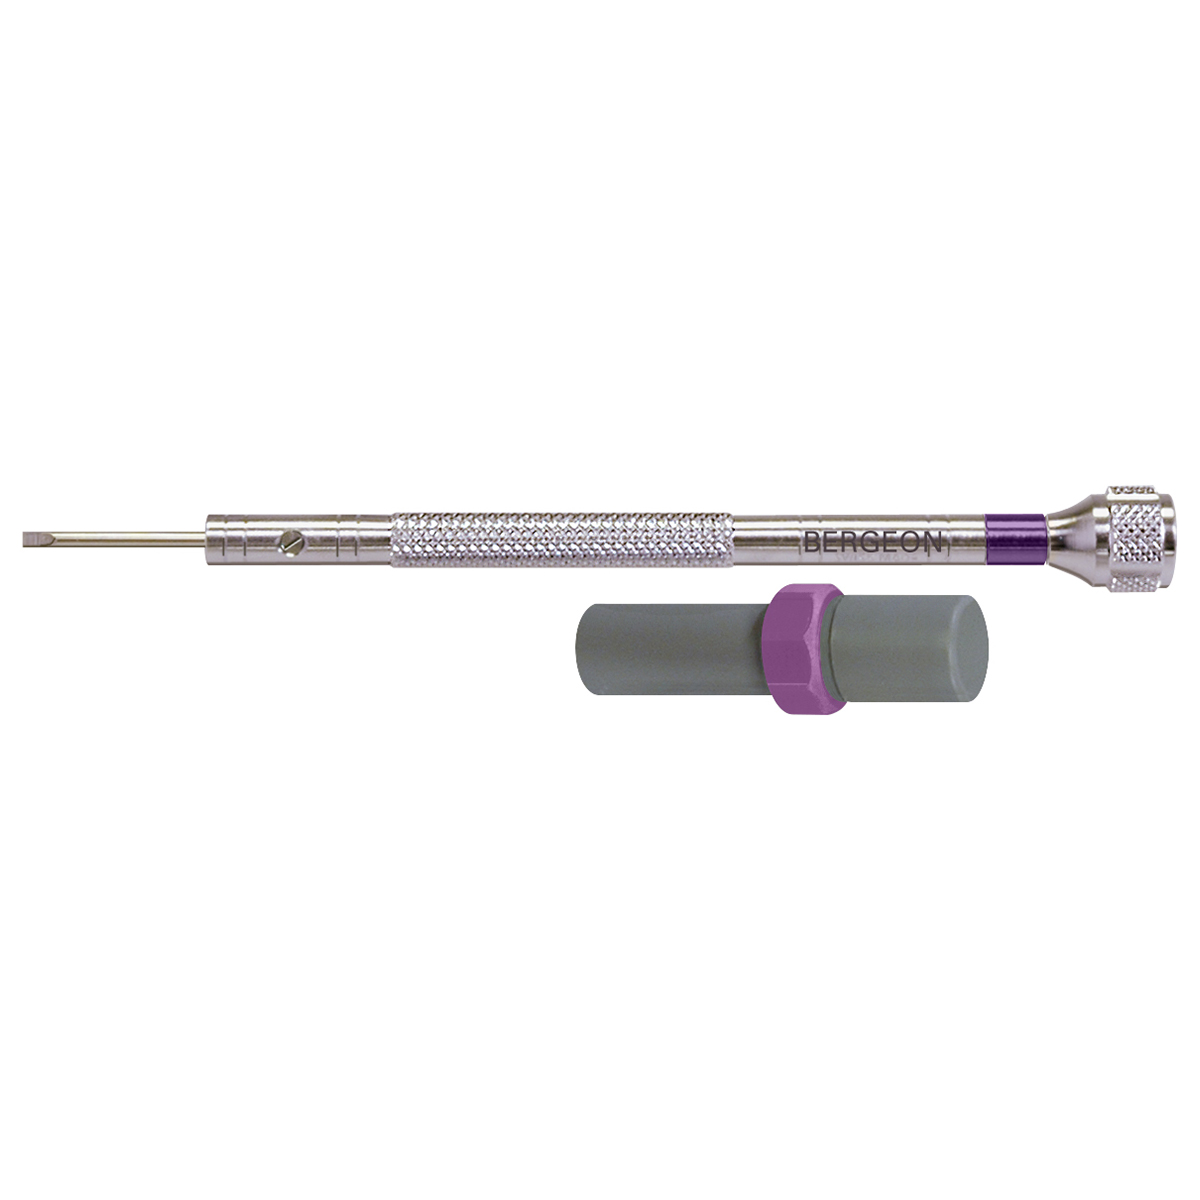 Bergeon 30080-H tournevis, mèche 1,6 mm, 3 mèches de rechange, violet